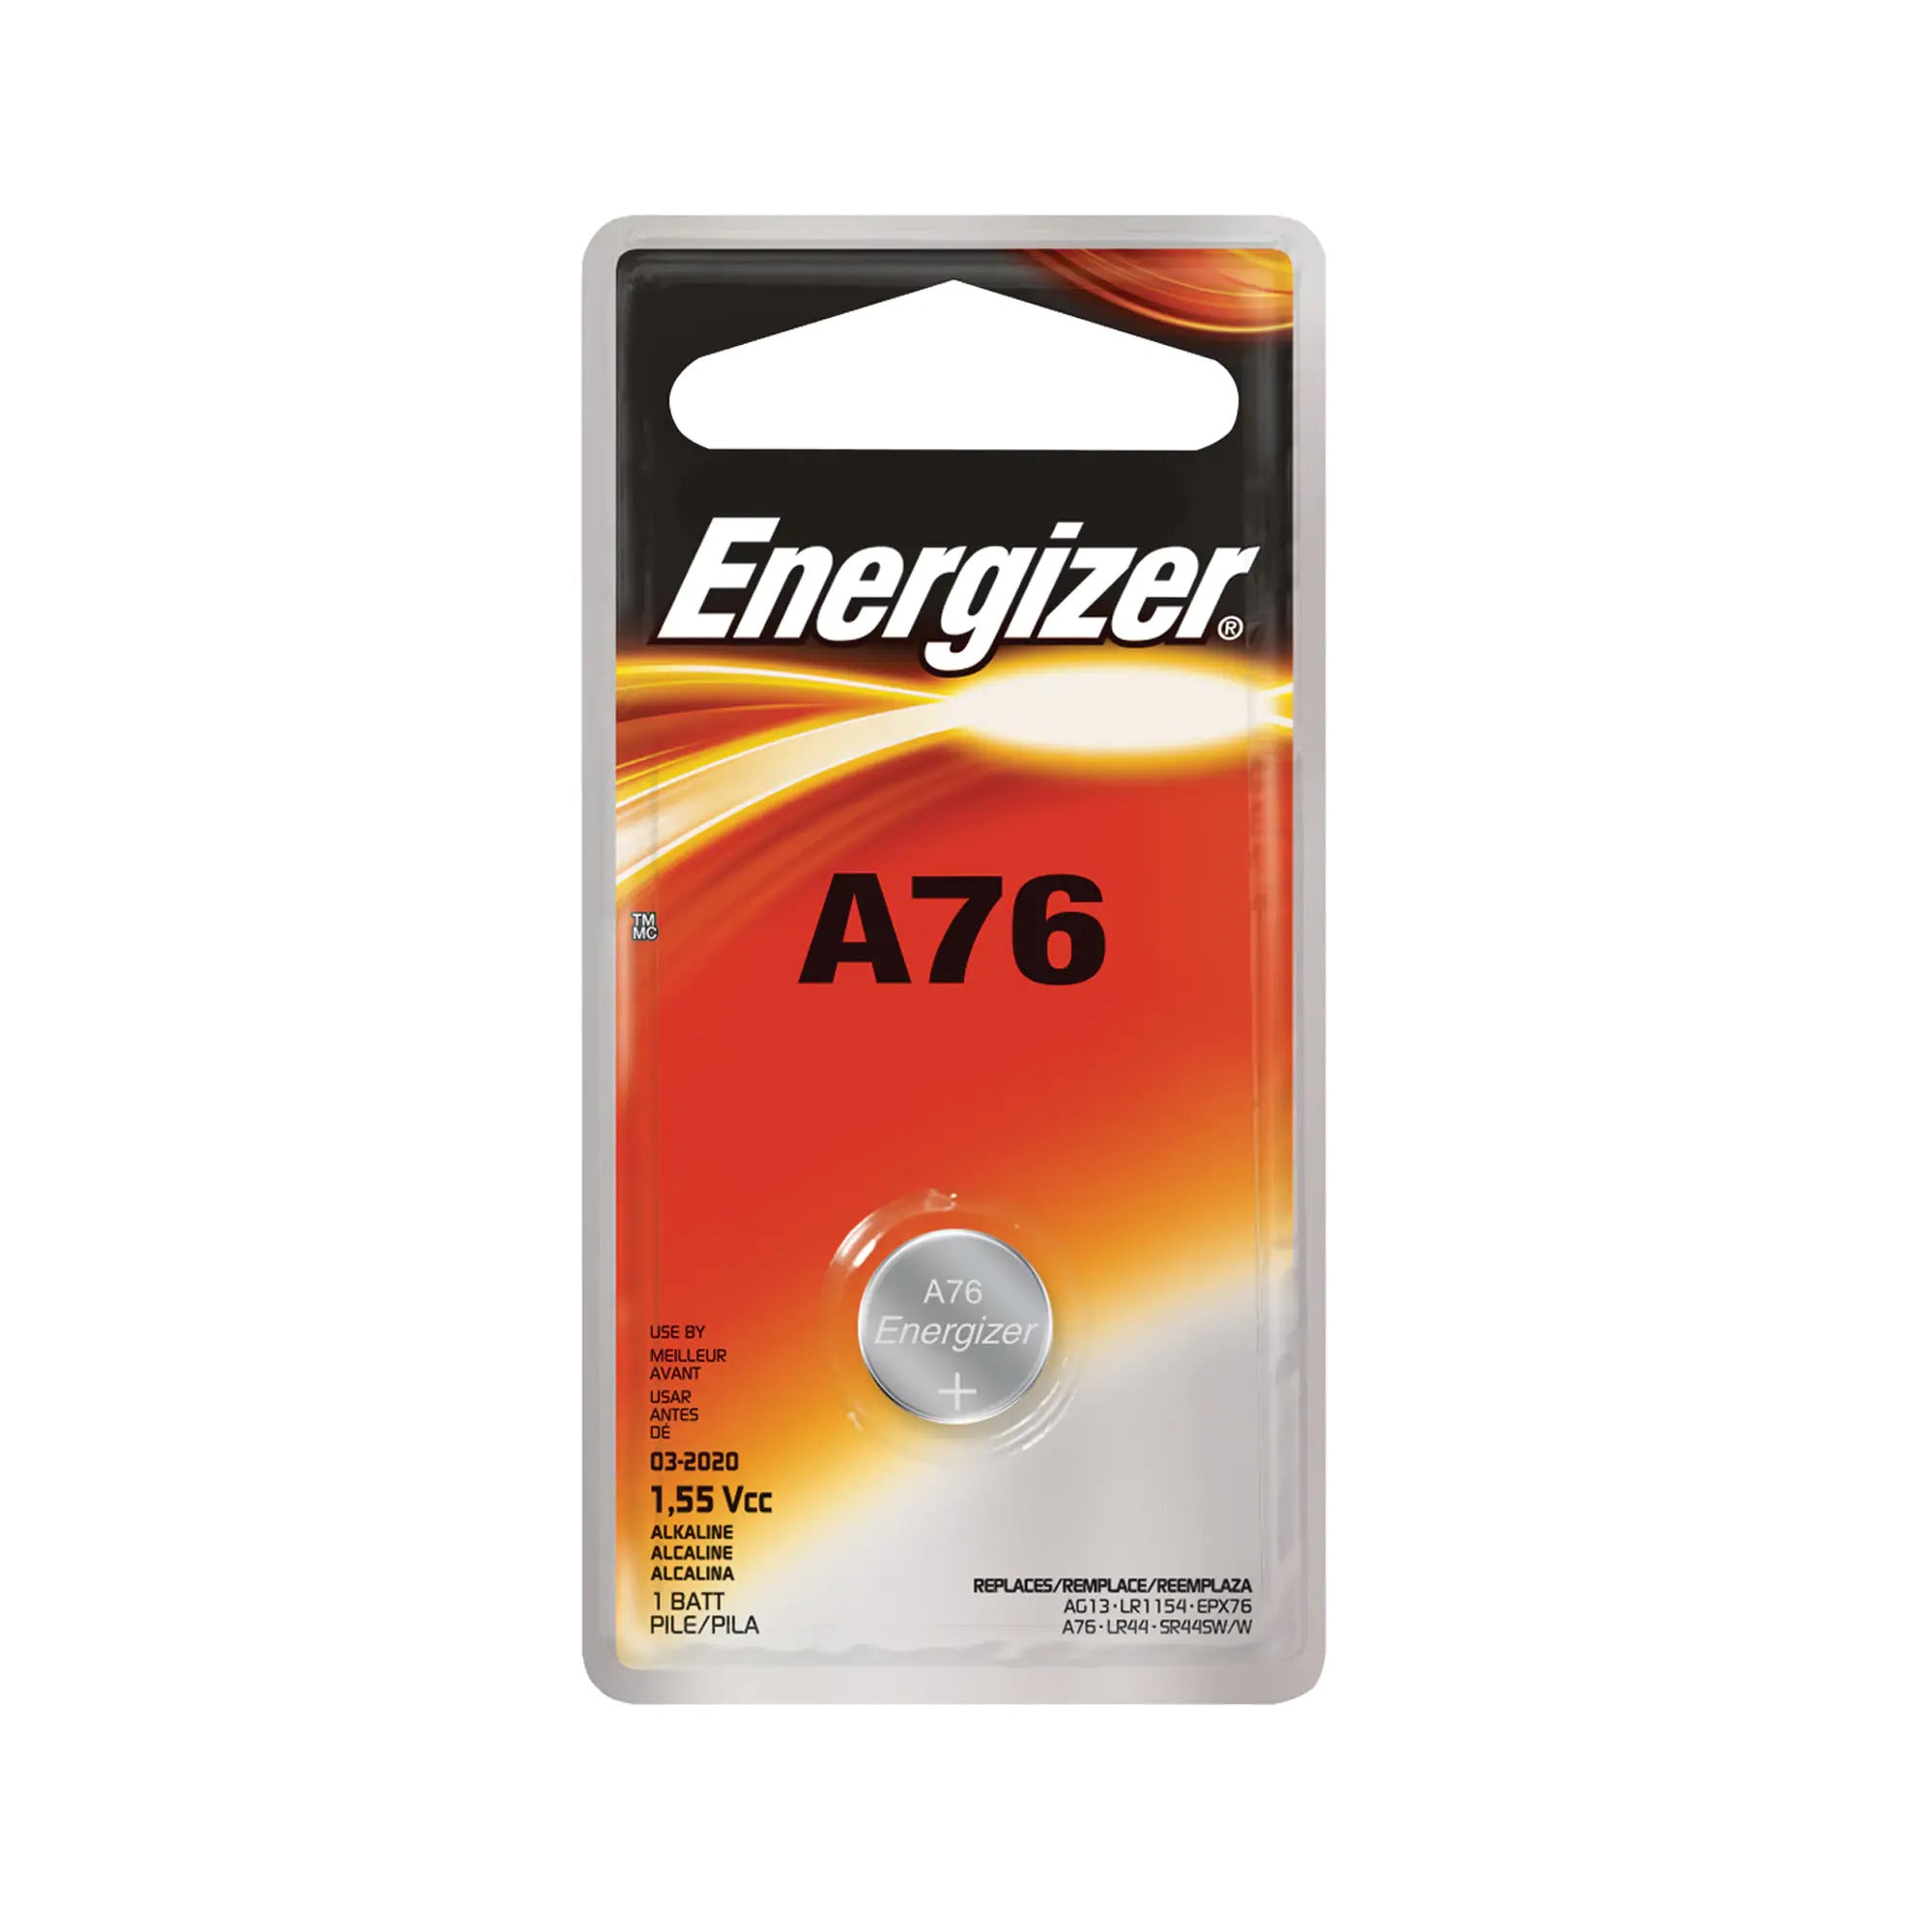 Energizer A76 1.5V Battery